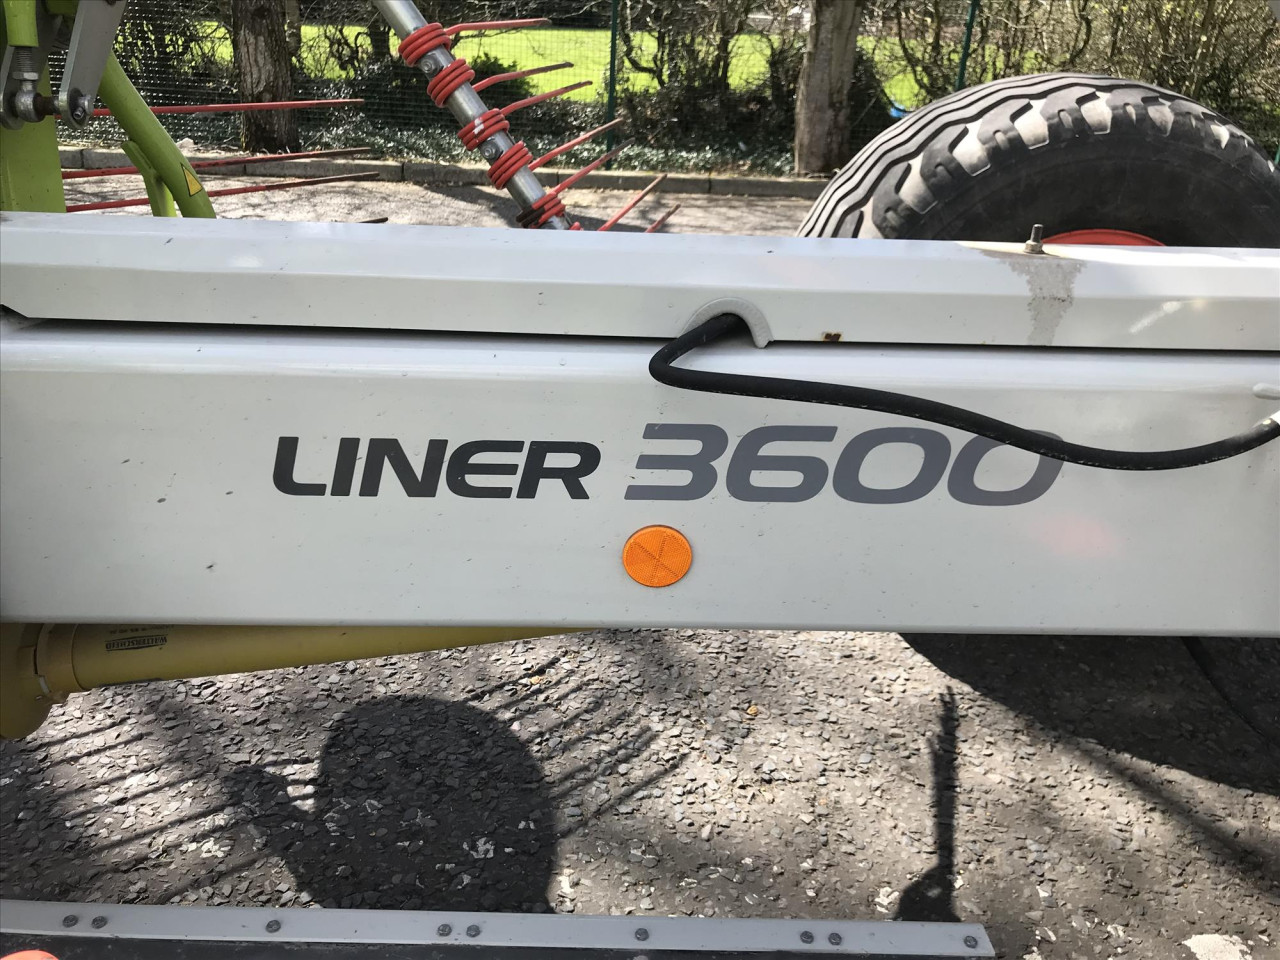 LINER 3600